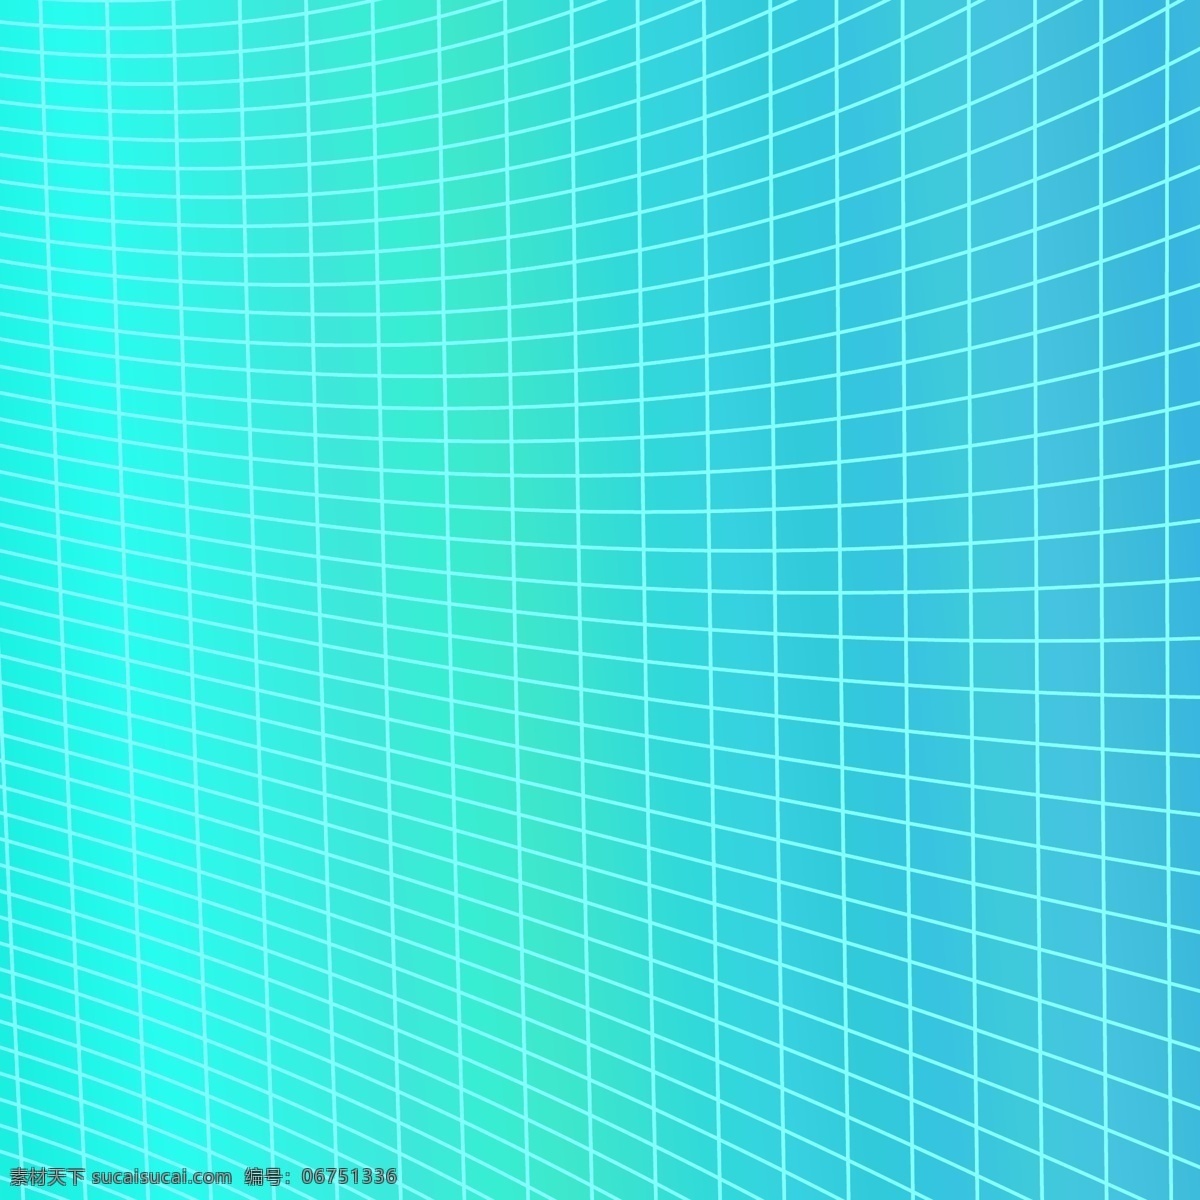 基于 曲线 角 栅格 动态 抽象 几何 背景 矢量 图形 图案 小册子 抽象背景 海报 蓝色背景 模板 线条 光线 蓝色 布局 墙纸 平面设计 艺术 网页 弓